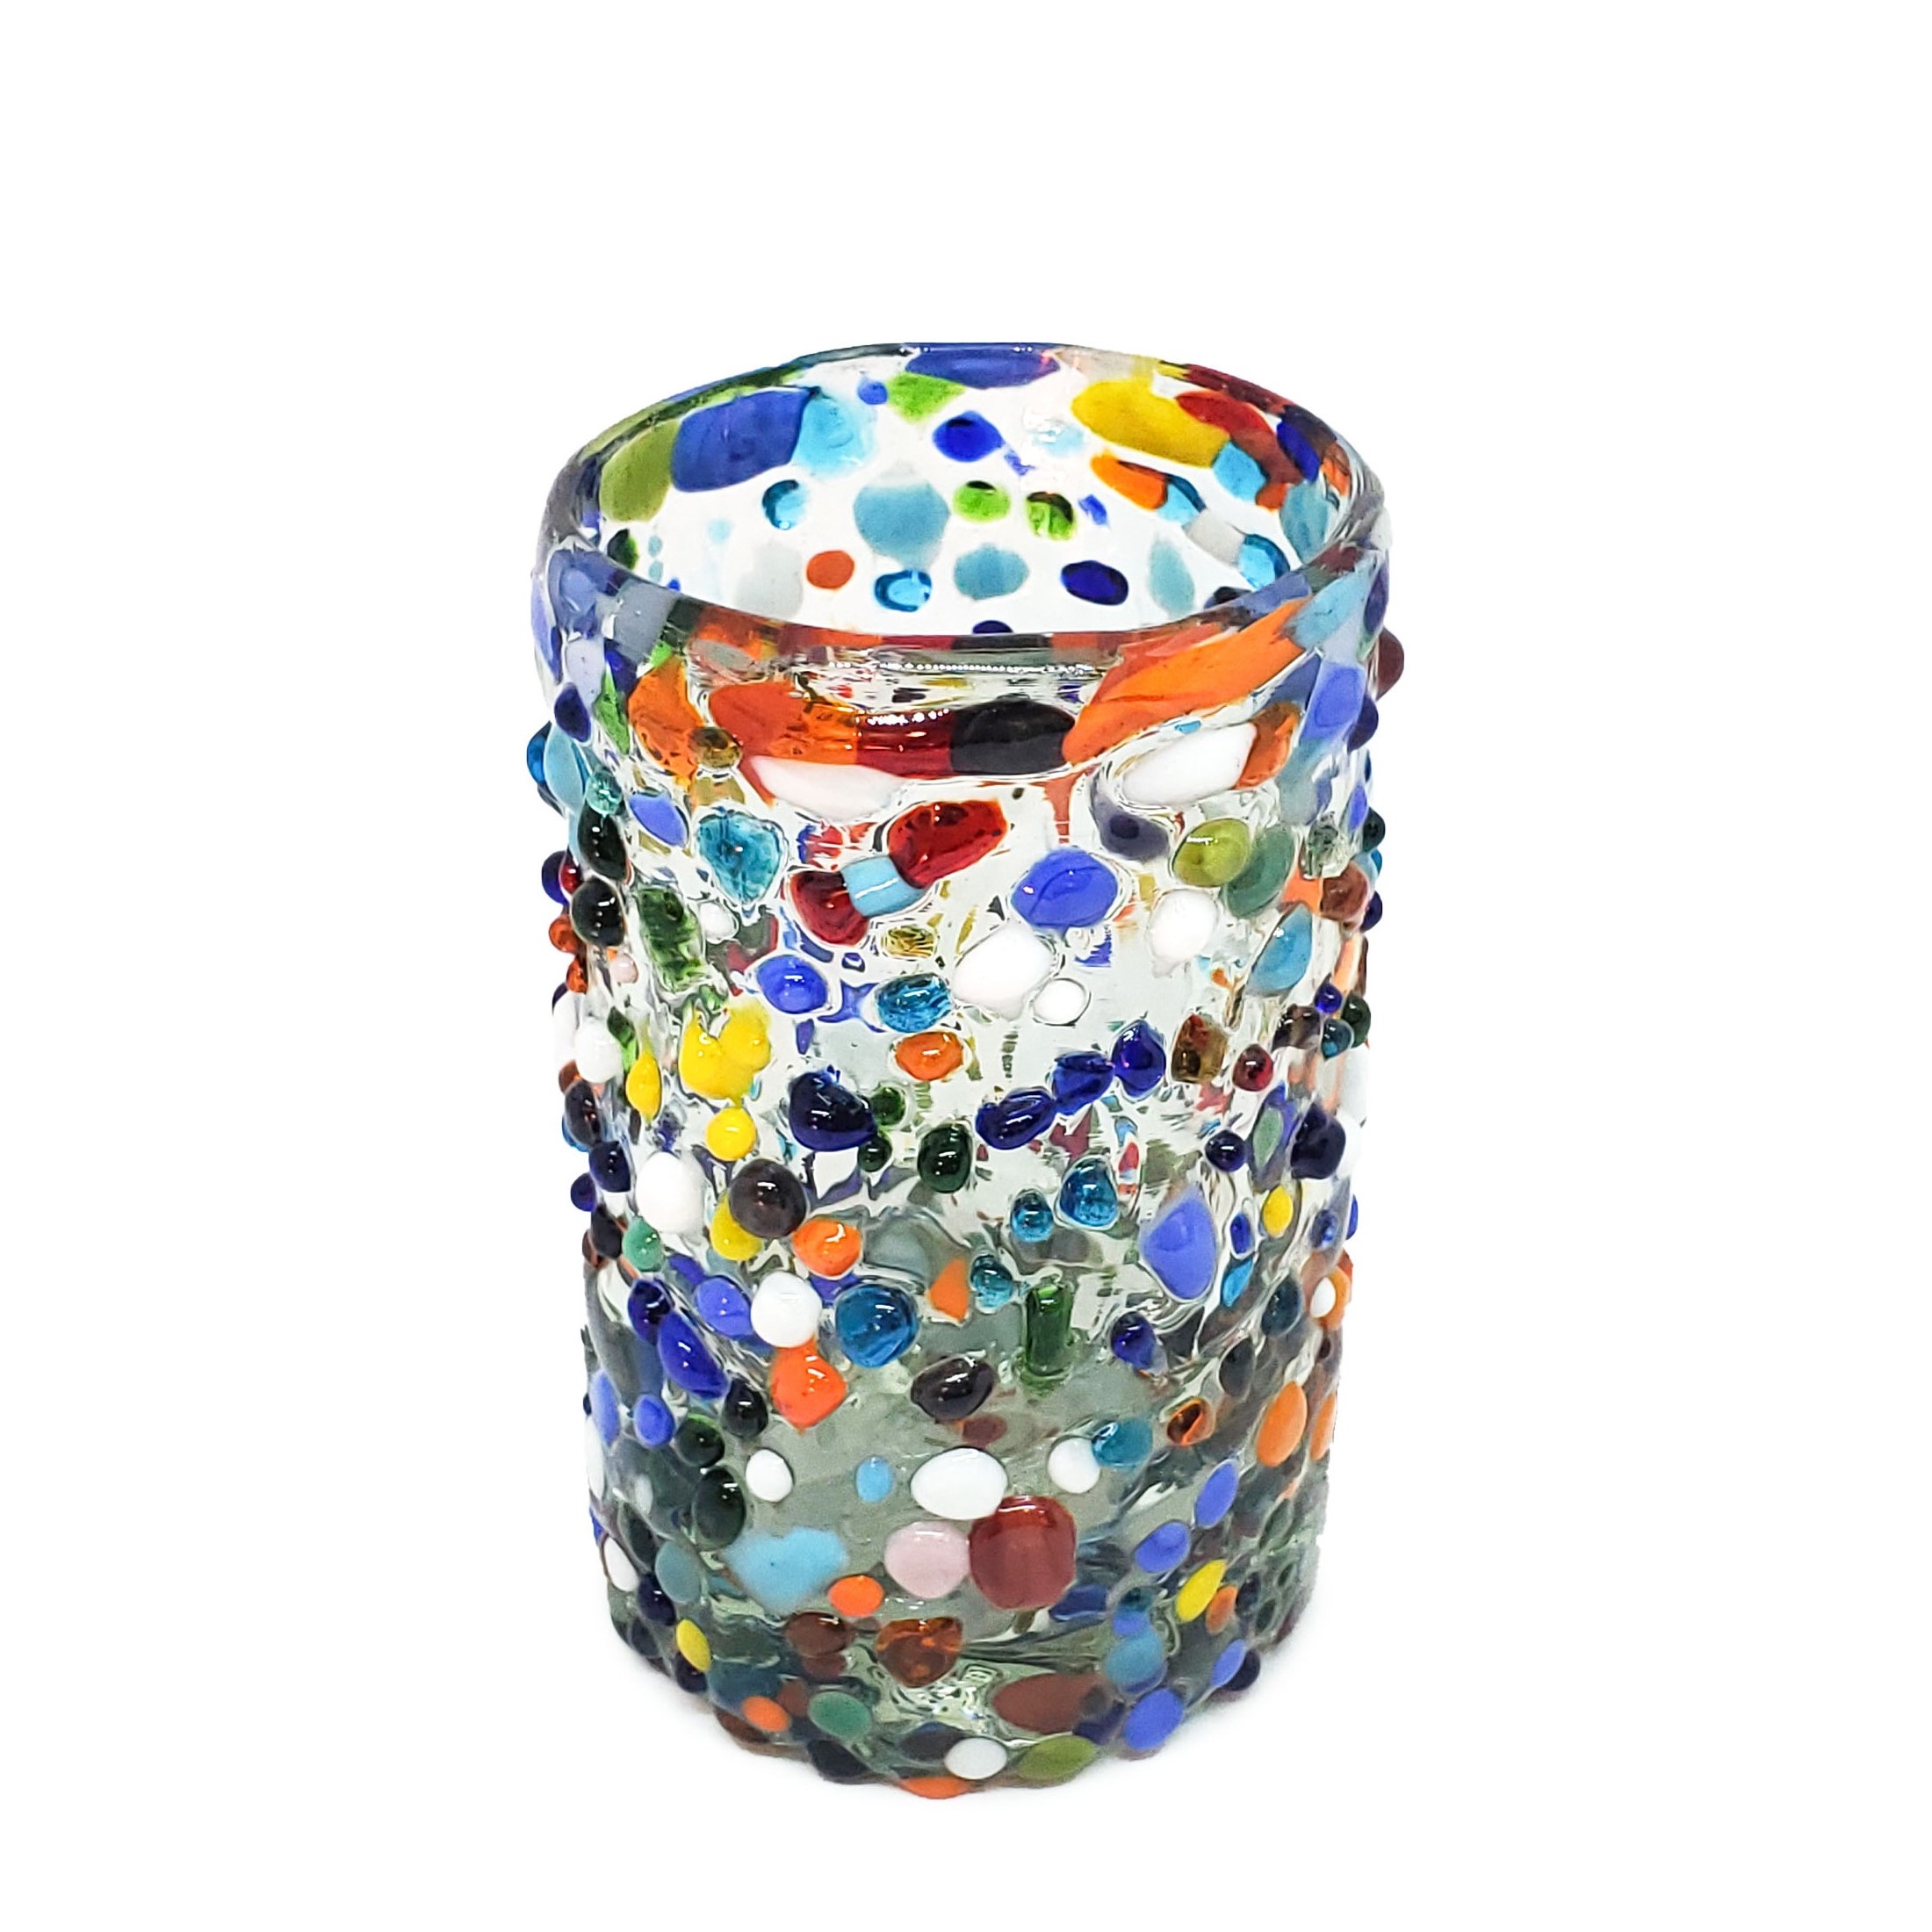 Vasos de Vidrio Soplado / Juego de 6 vasos Jugo 9oz Confeti granizado / Deje entrar a la primavera en su casa con éste colorido juego de vasos. El decorado con vidrio multicolor los hace resaltar en cualquier lugar.